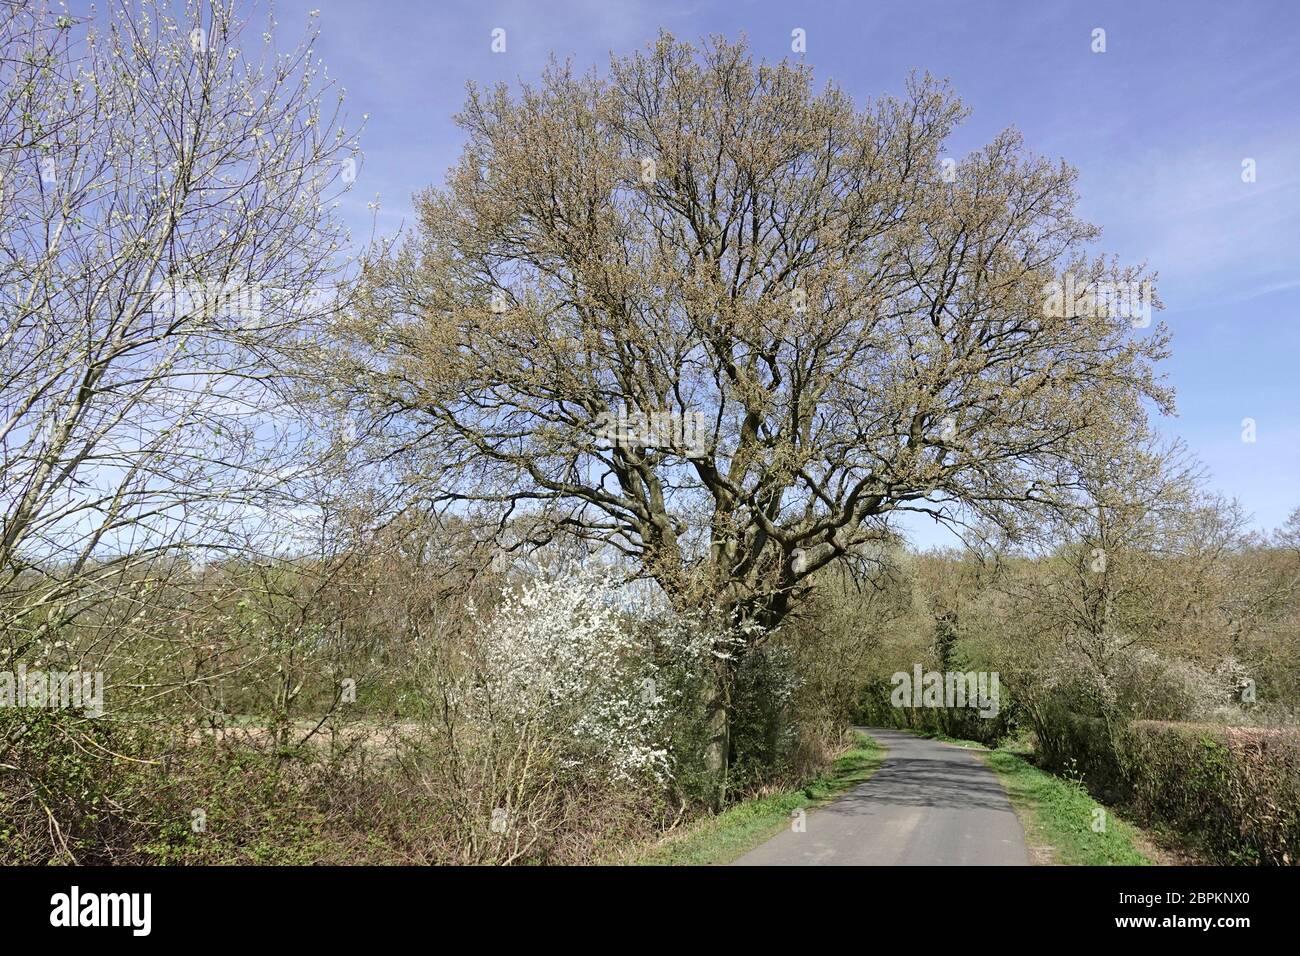 Schmale Landstraße & Landschaft in Essex Landschaft mit Frühlingswachstum am Straßenrand Englisch Eiche & weiße Blüte in ländlichen Hecken England UK Stockfoto